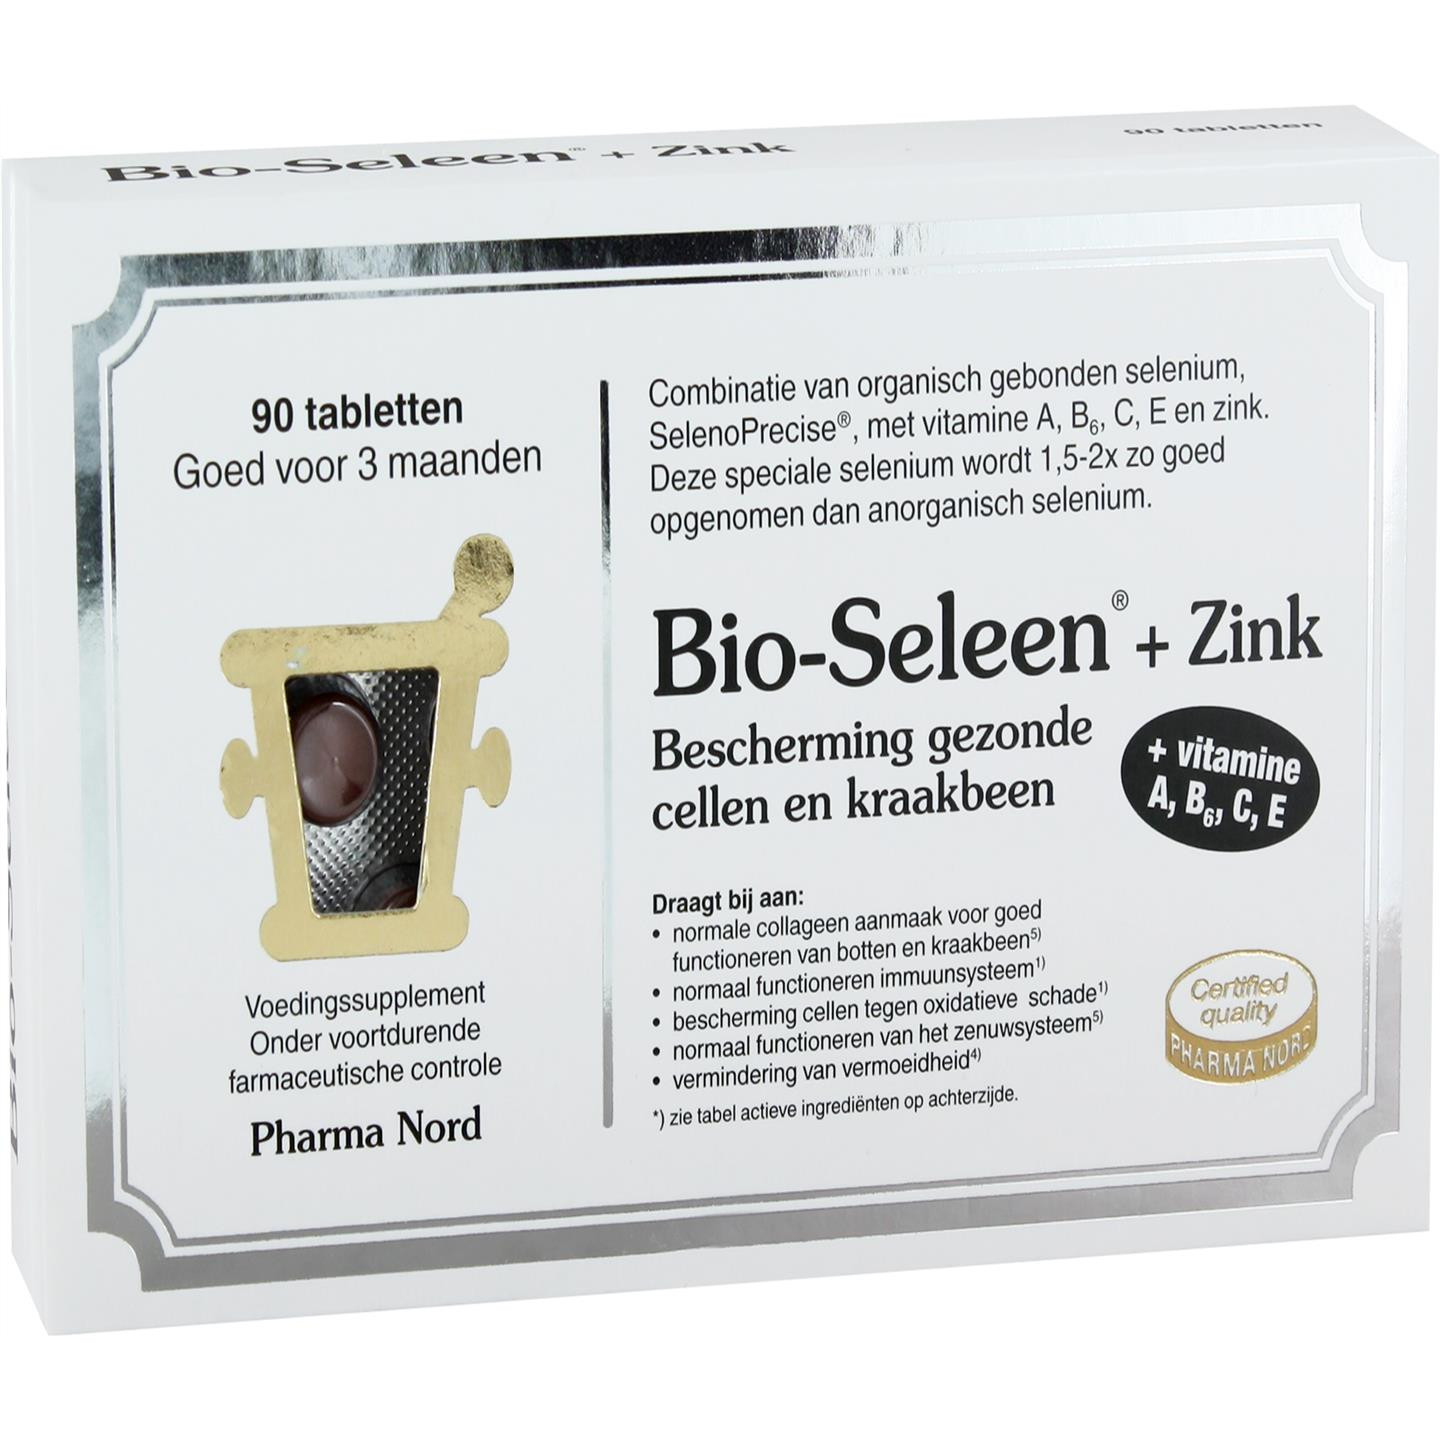 Bio-Seleen + Zink